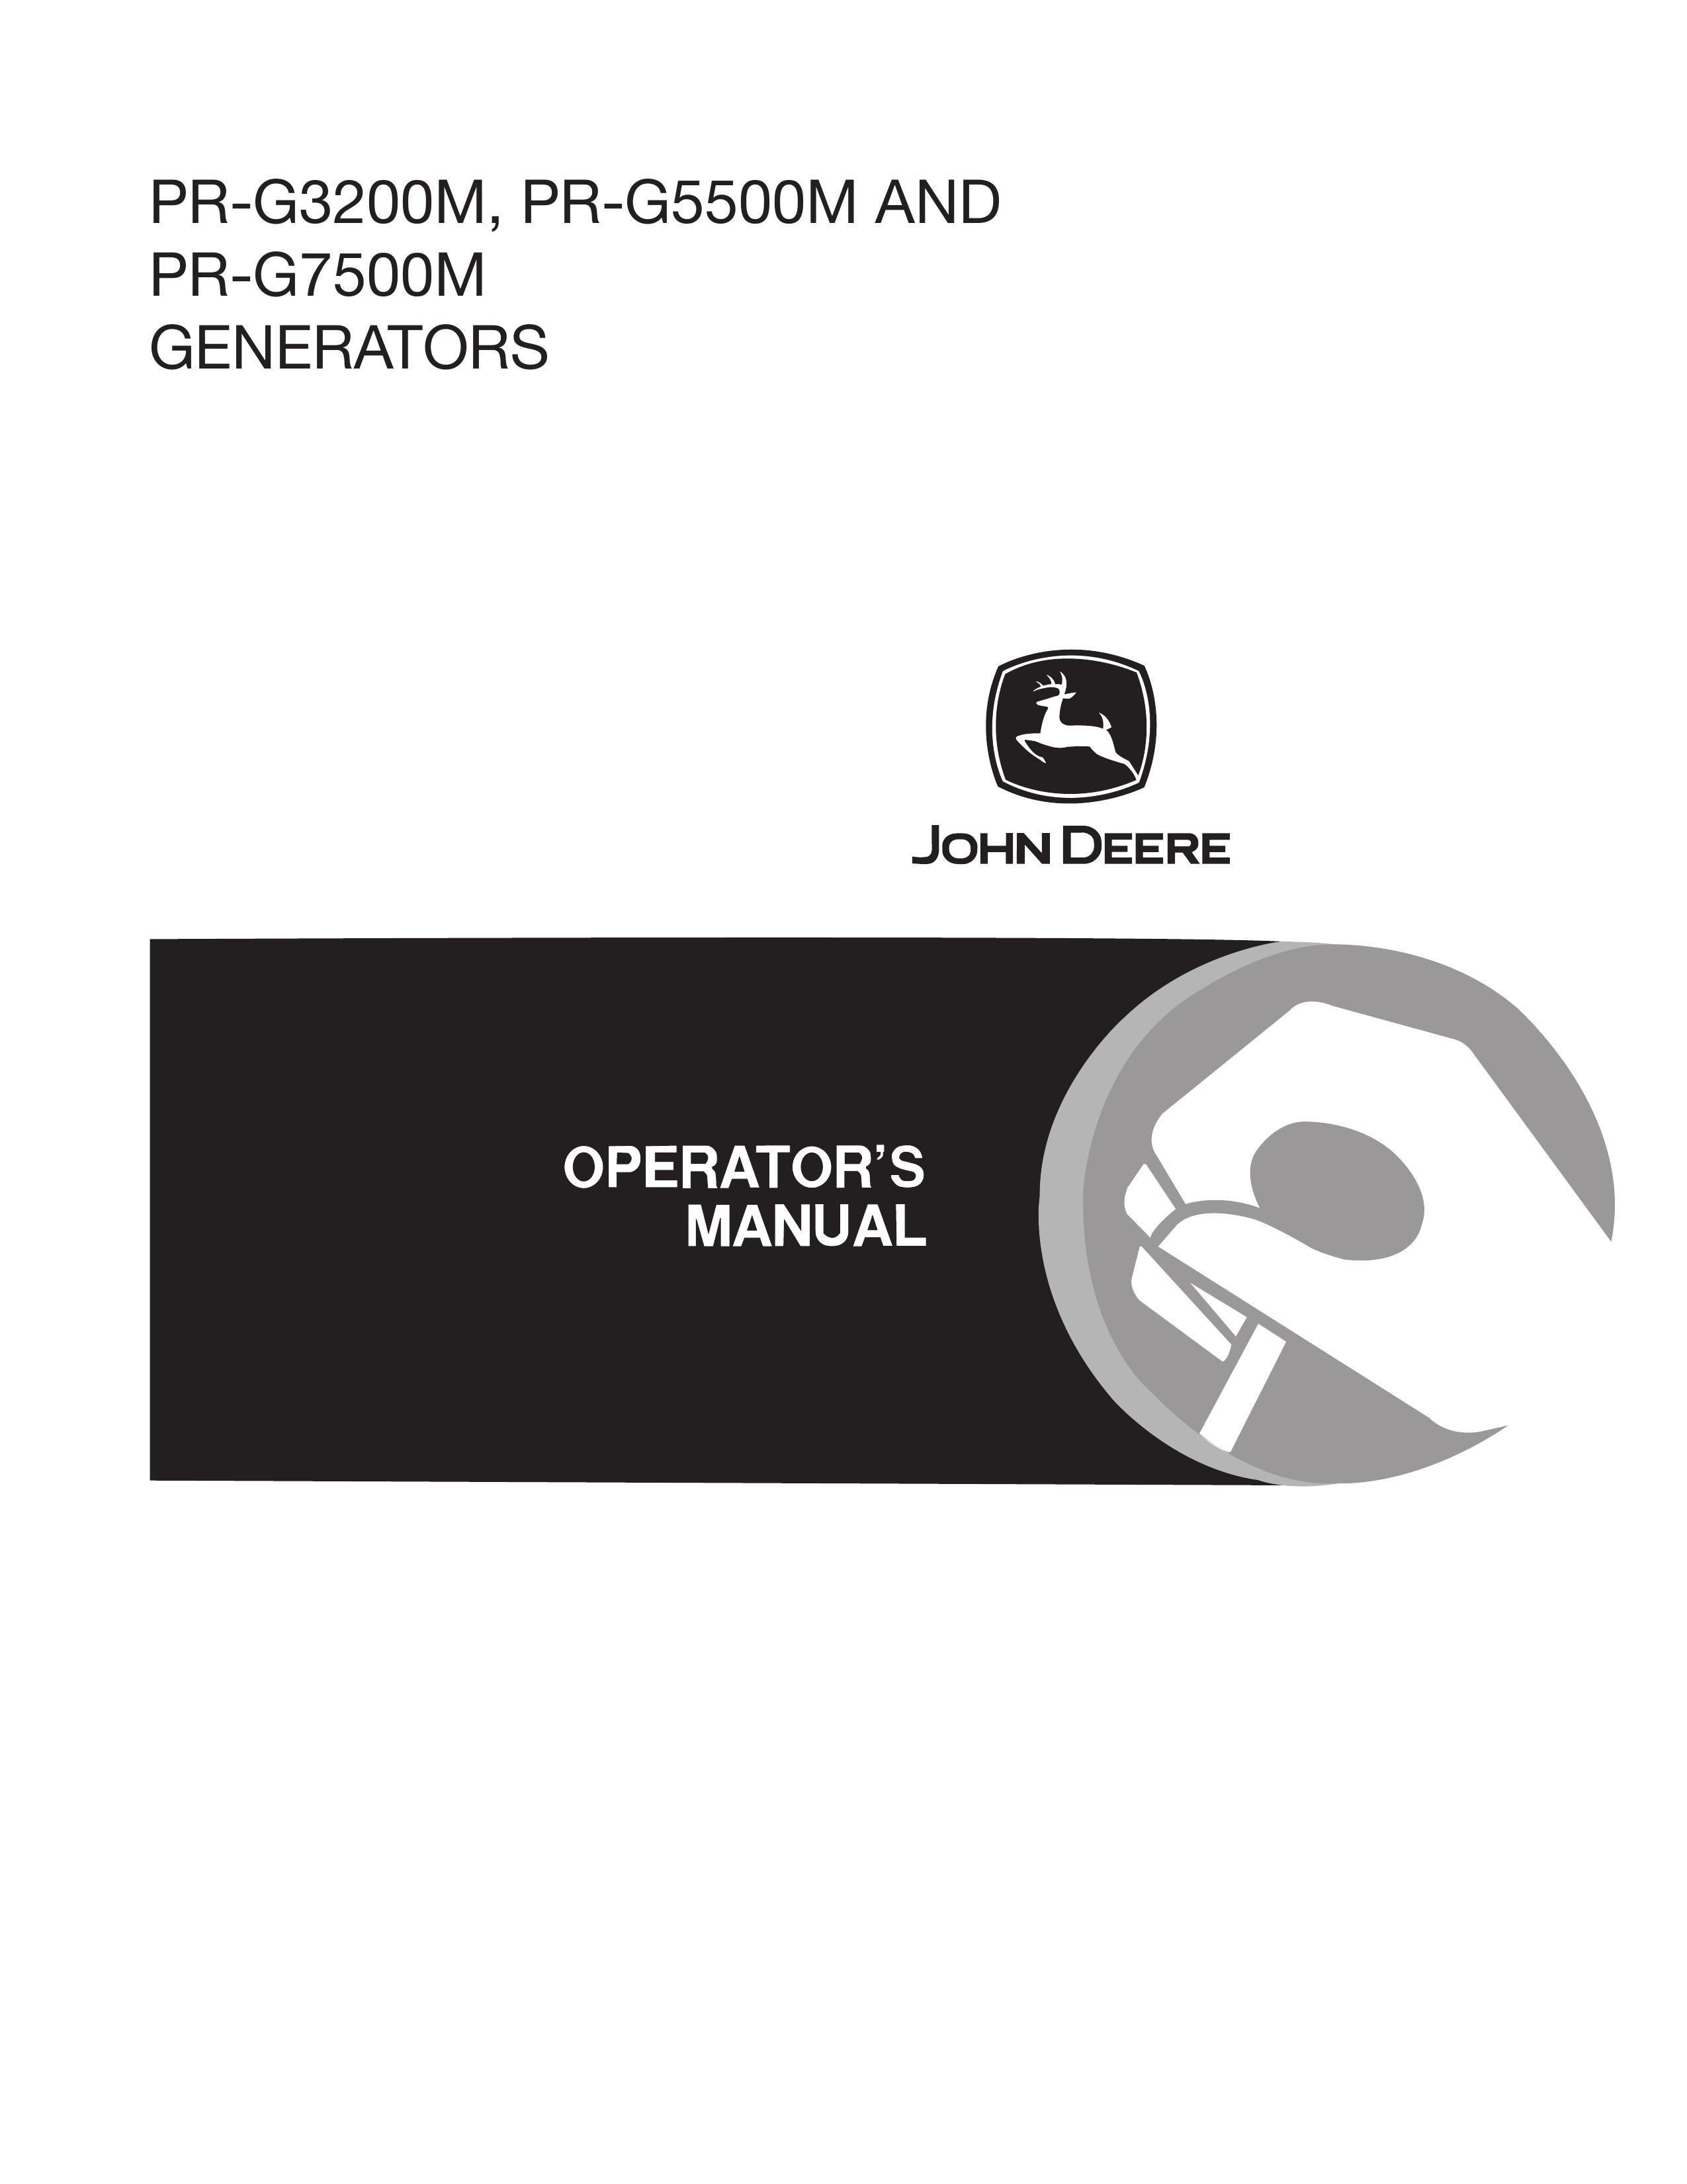 John Deere PR-G7500M Portable Generator User Manual